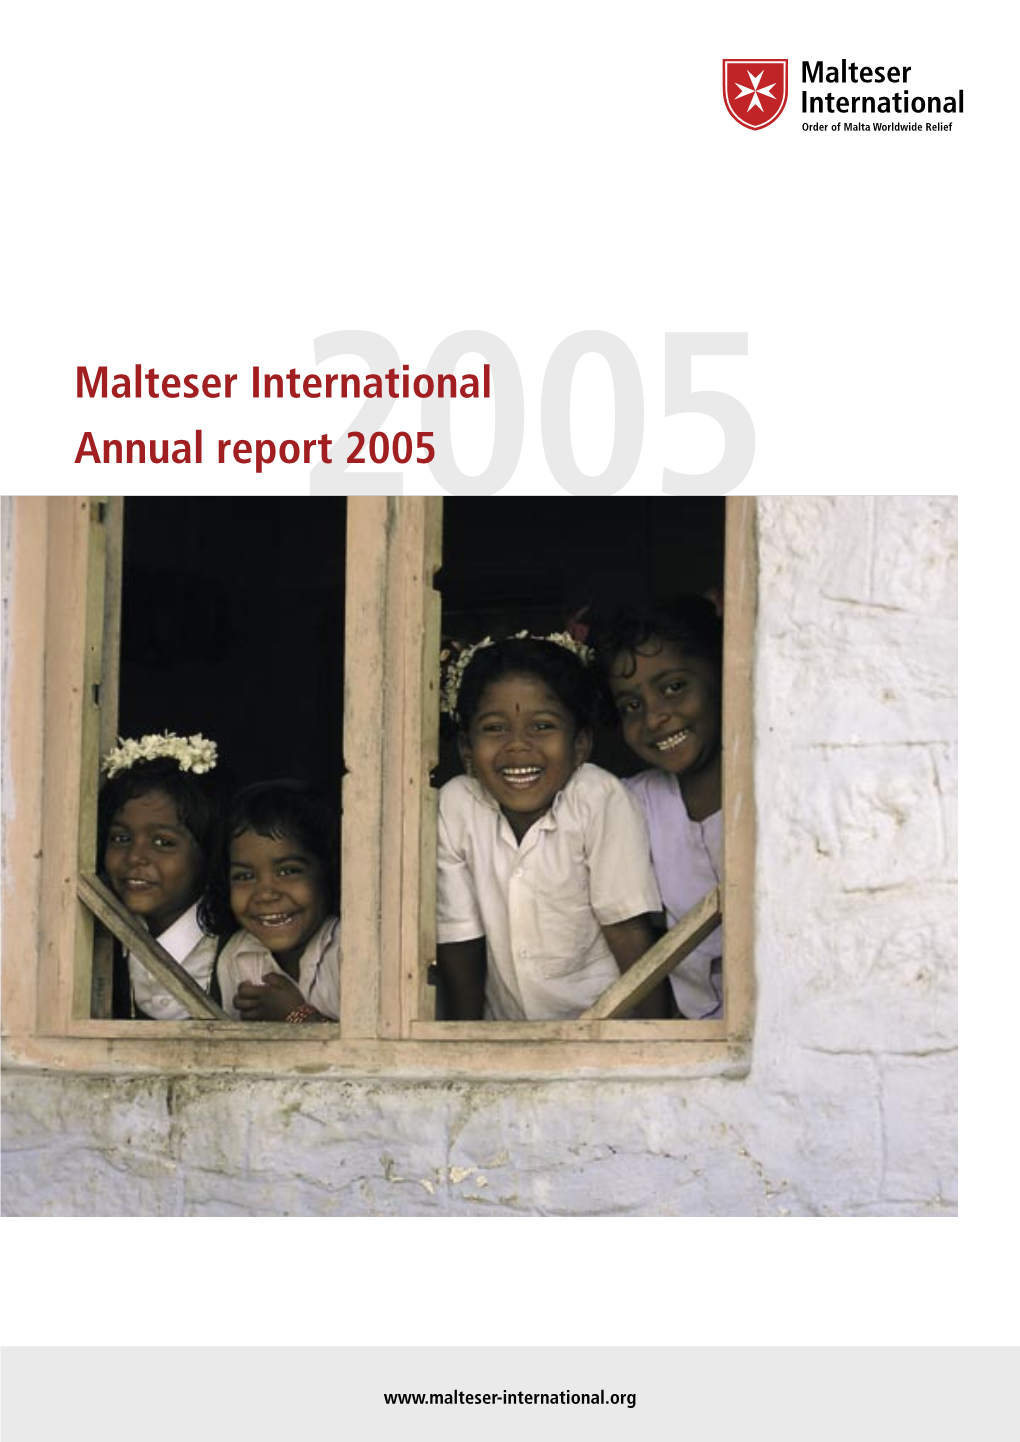 Malteser International Annual Report 2005